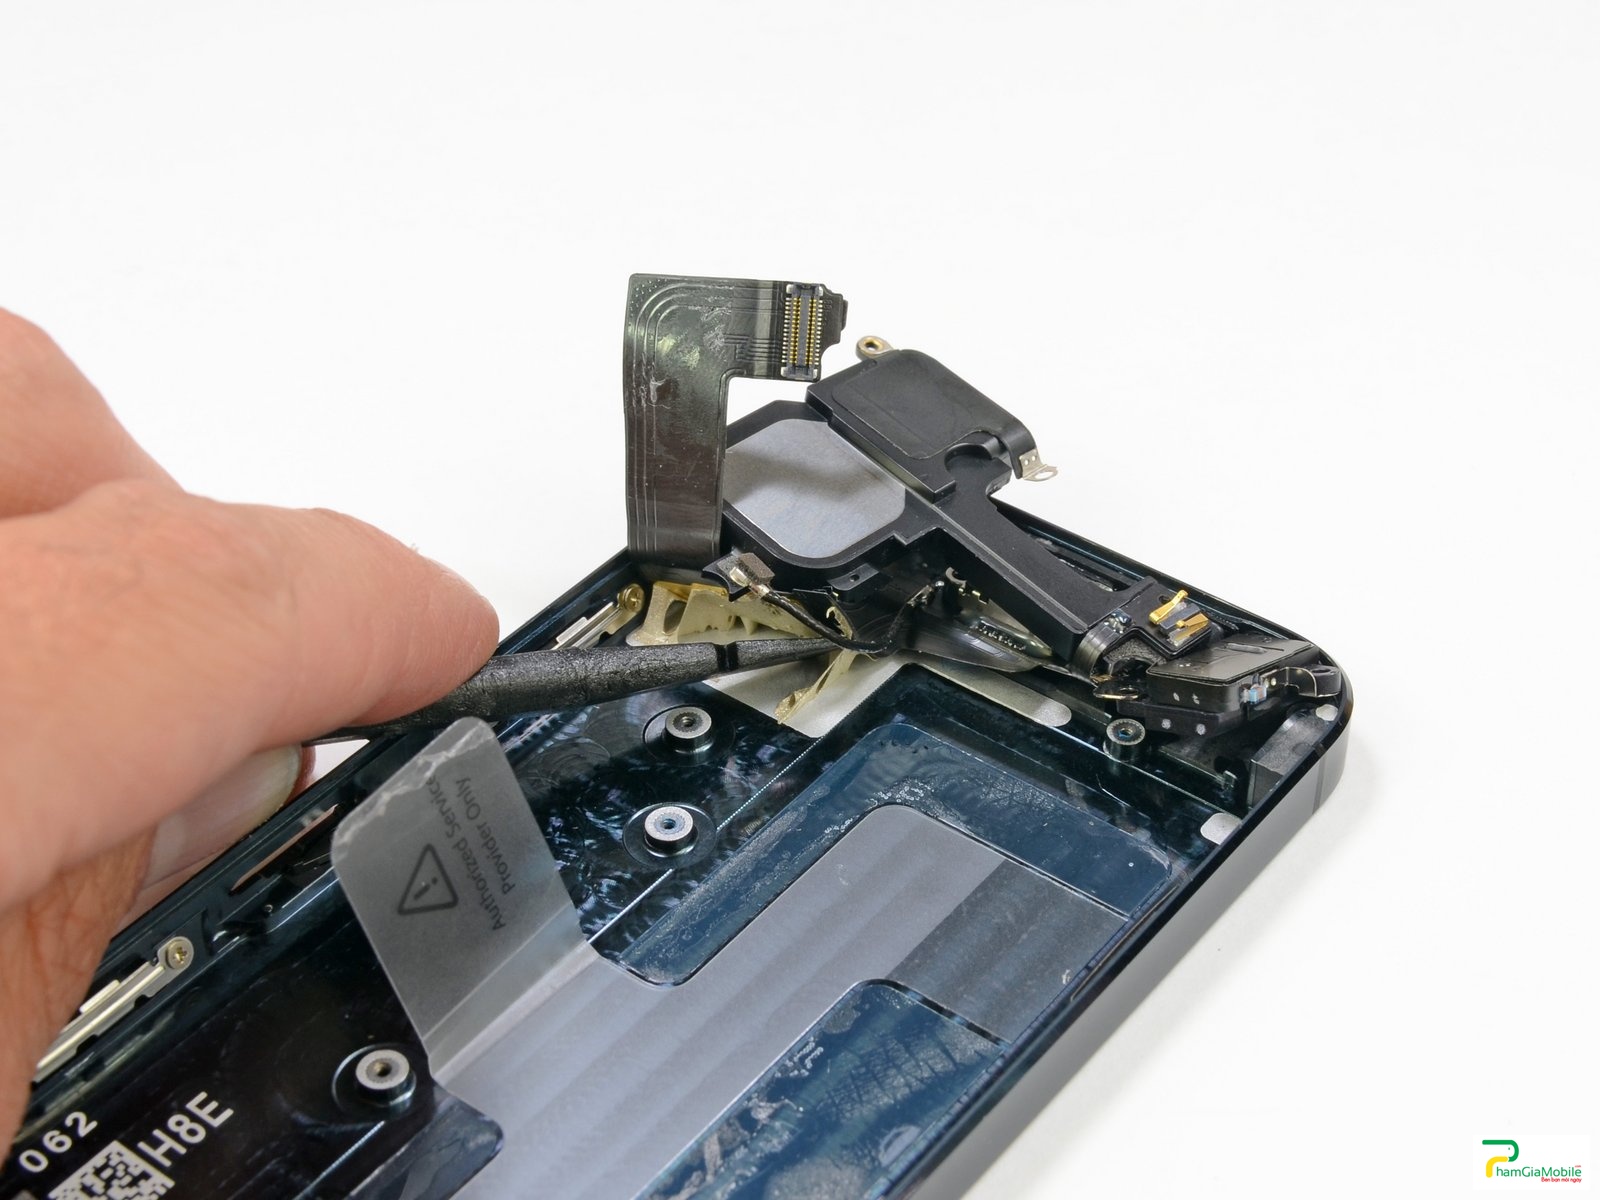 IPhone 5 Lỗi Xạc Cắm Không Báo Gì | I Can Fix